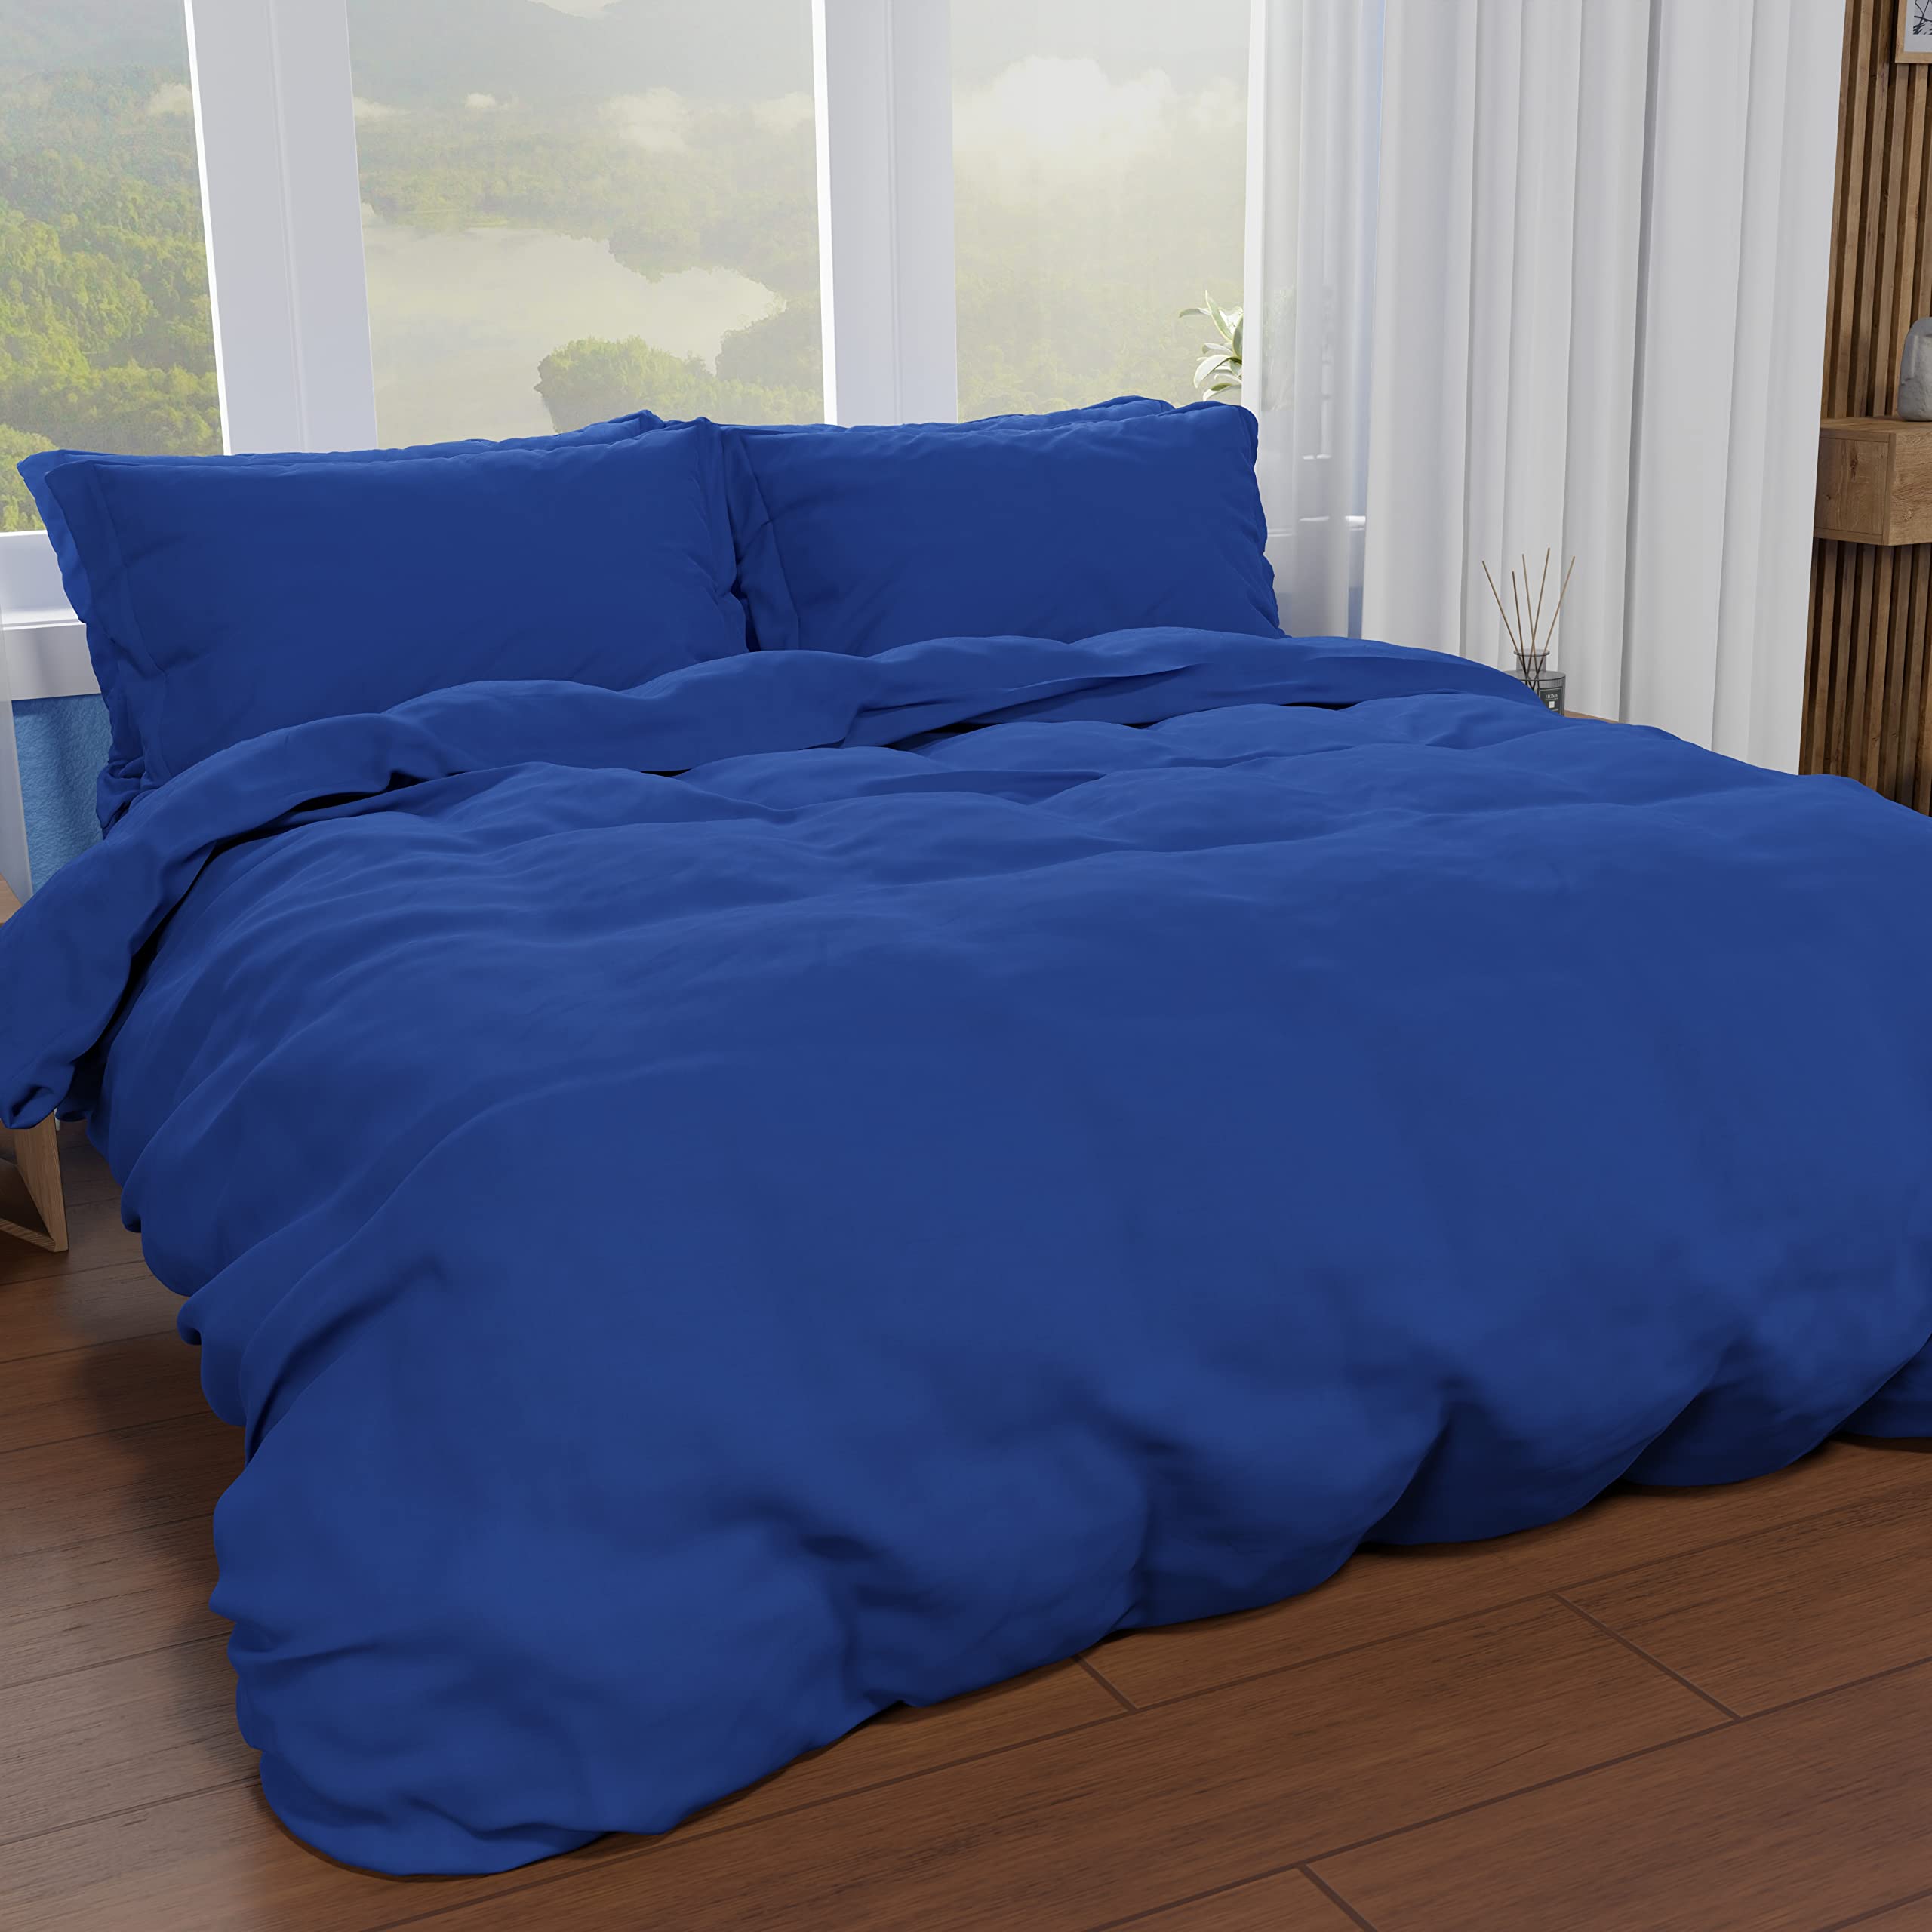 PETTI Artigiani Italiani - Bettbezug für französisches Bett, Bettbezug und Kissenbezüge aus Mikrofaser, einfarbig, elektrisch, 100% Made in Italy